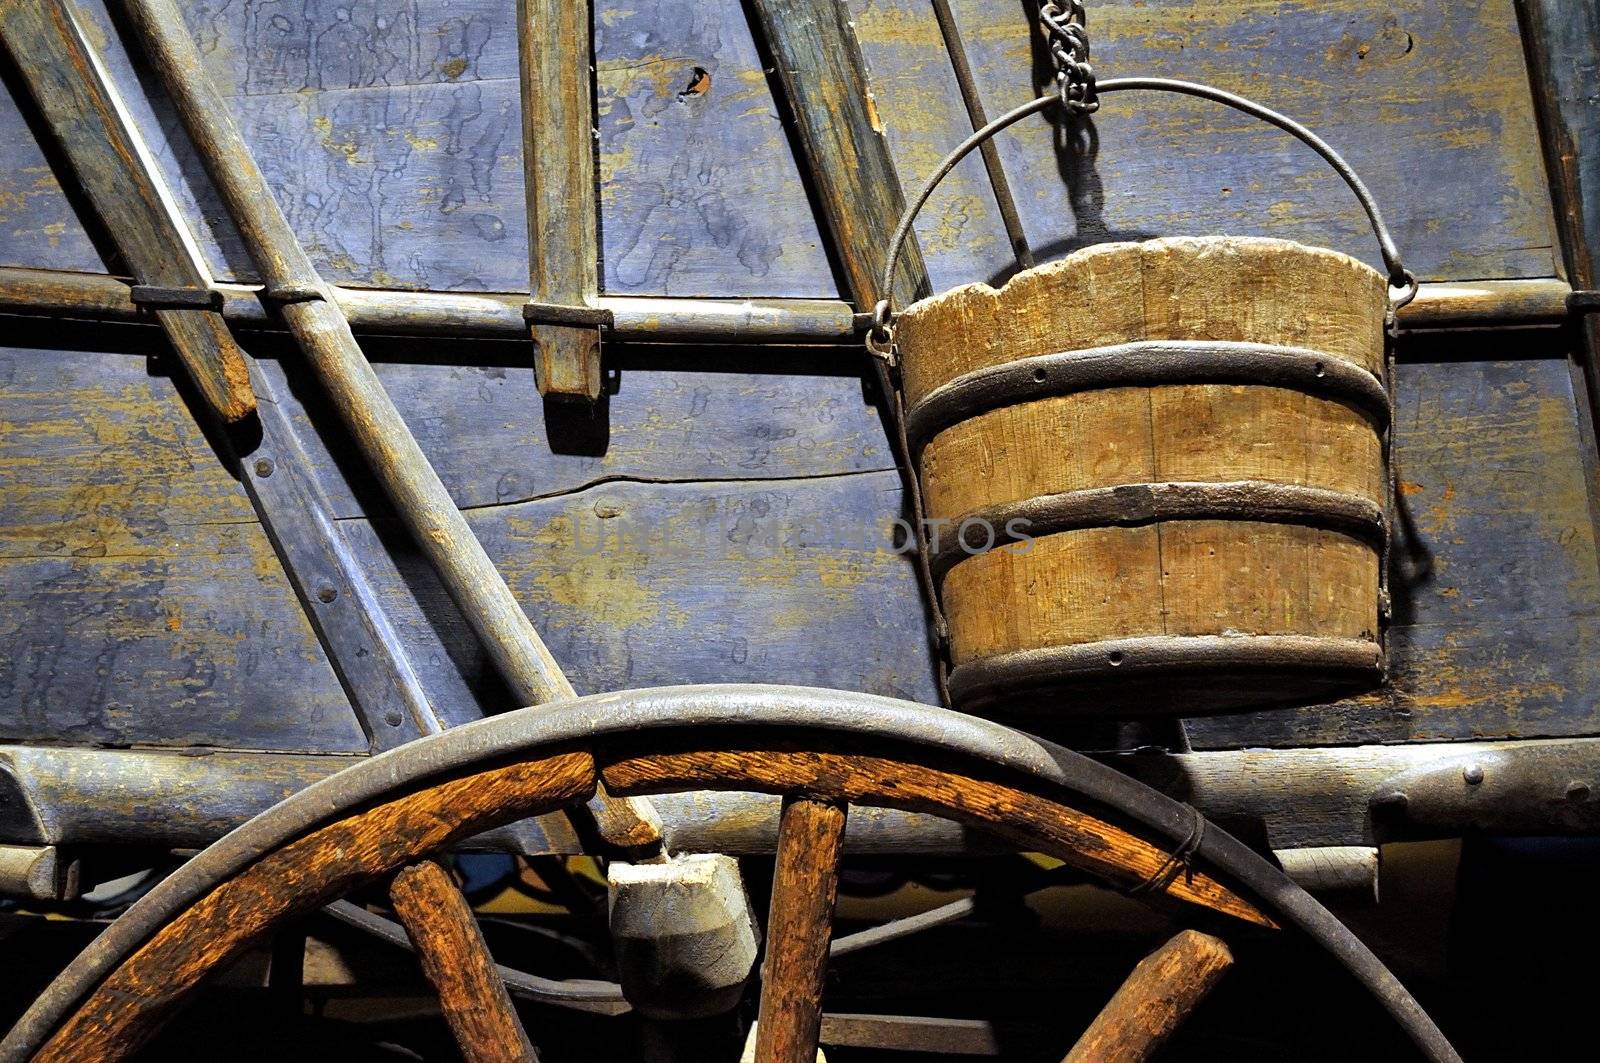 Wagon, Wheel, and Bucket by fernando2148